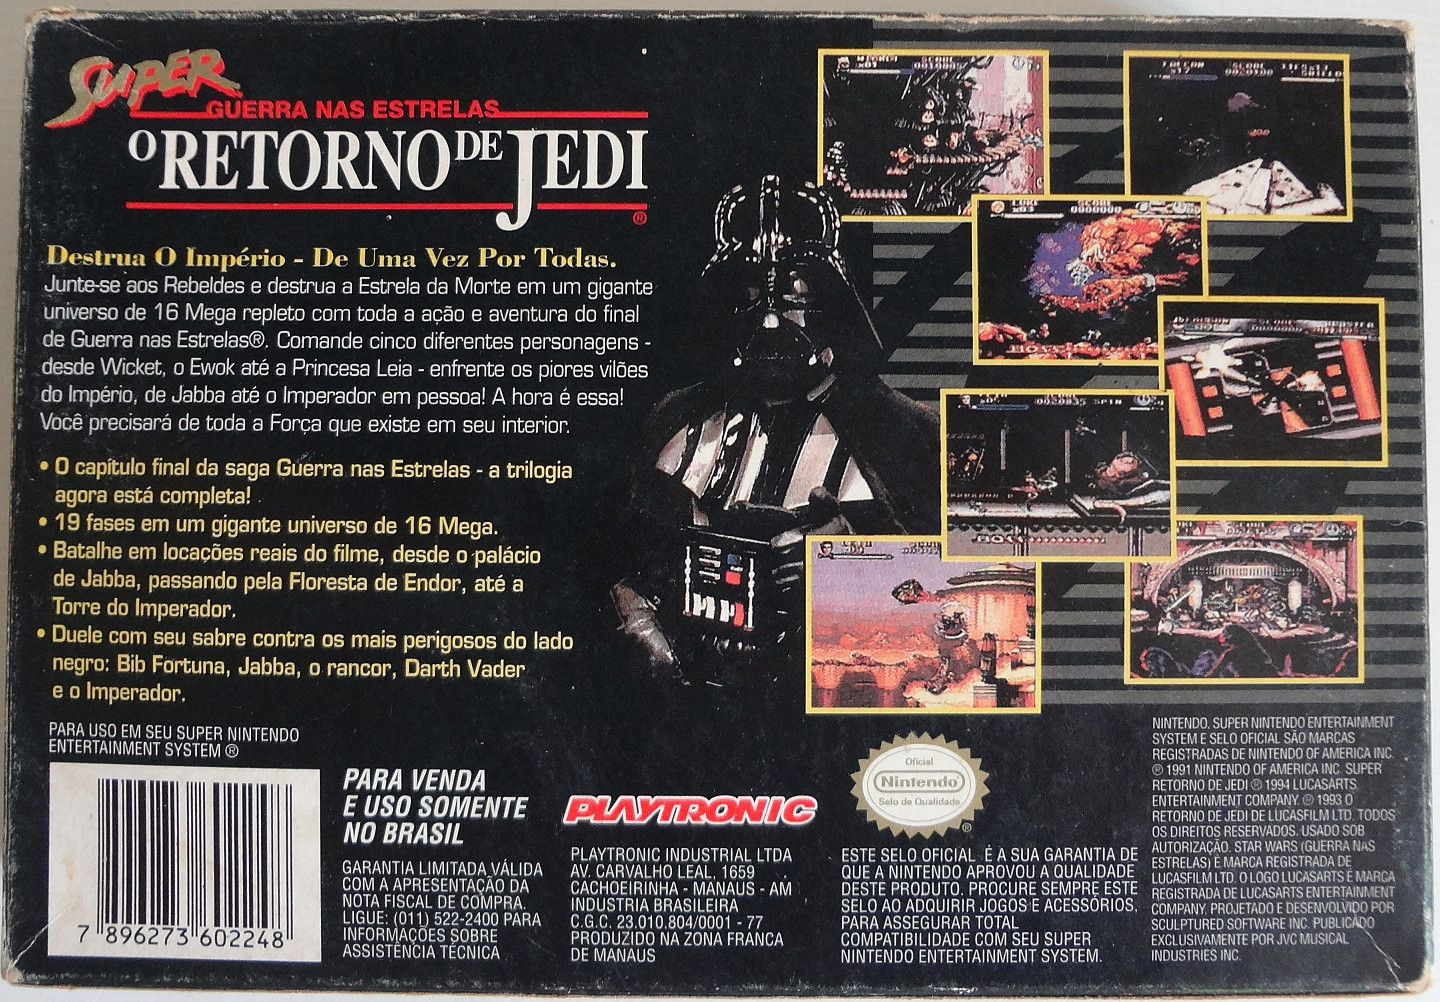 Super O Retorno de Jedi (Super Return of the Jedi) - Playtronic (Box - back)